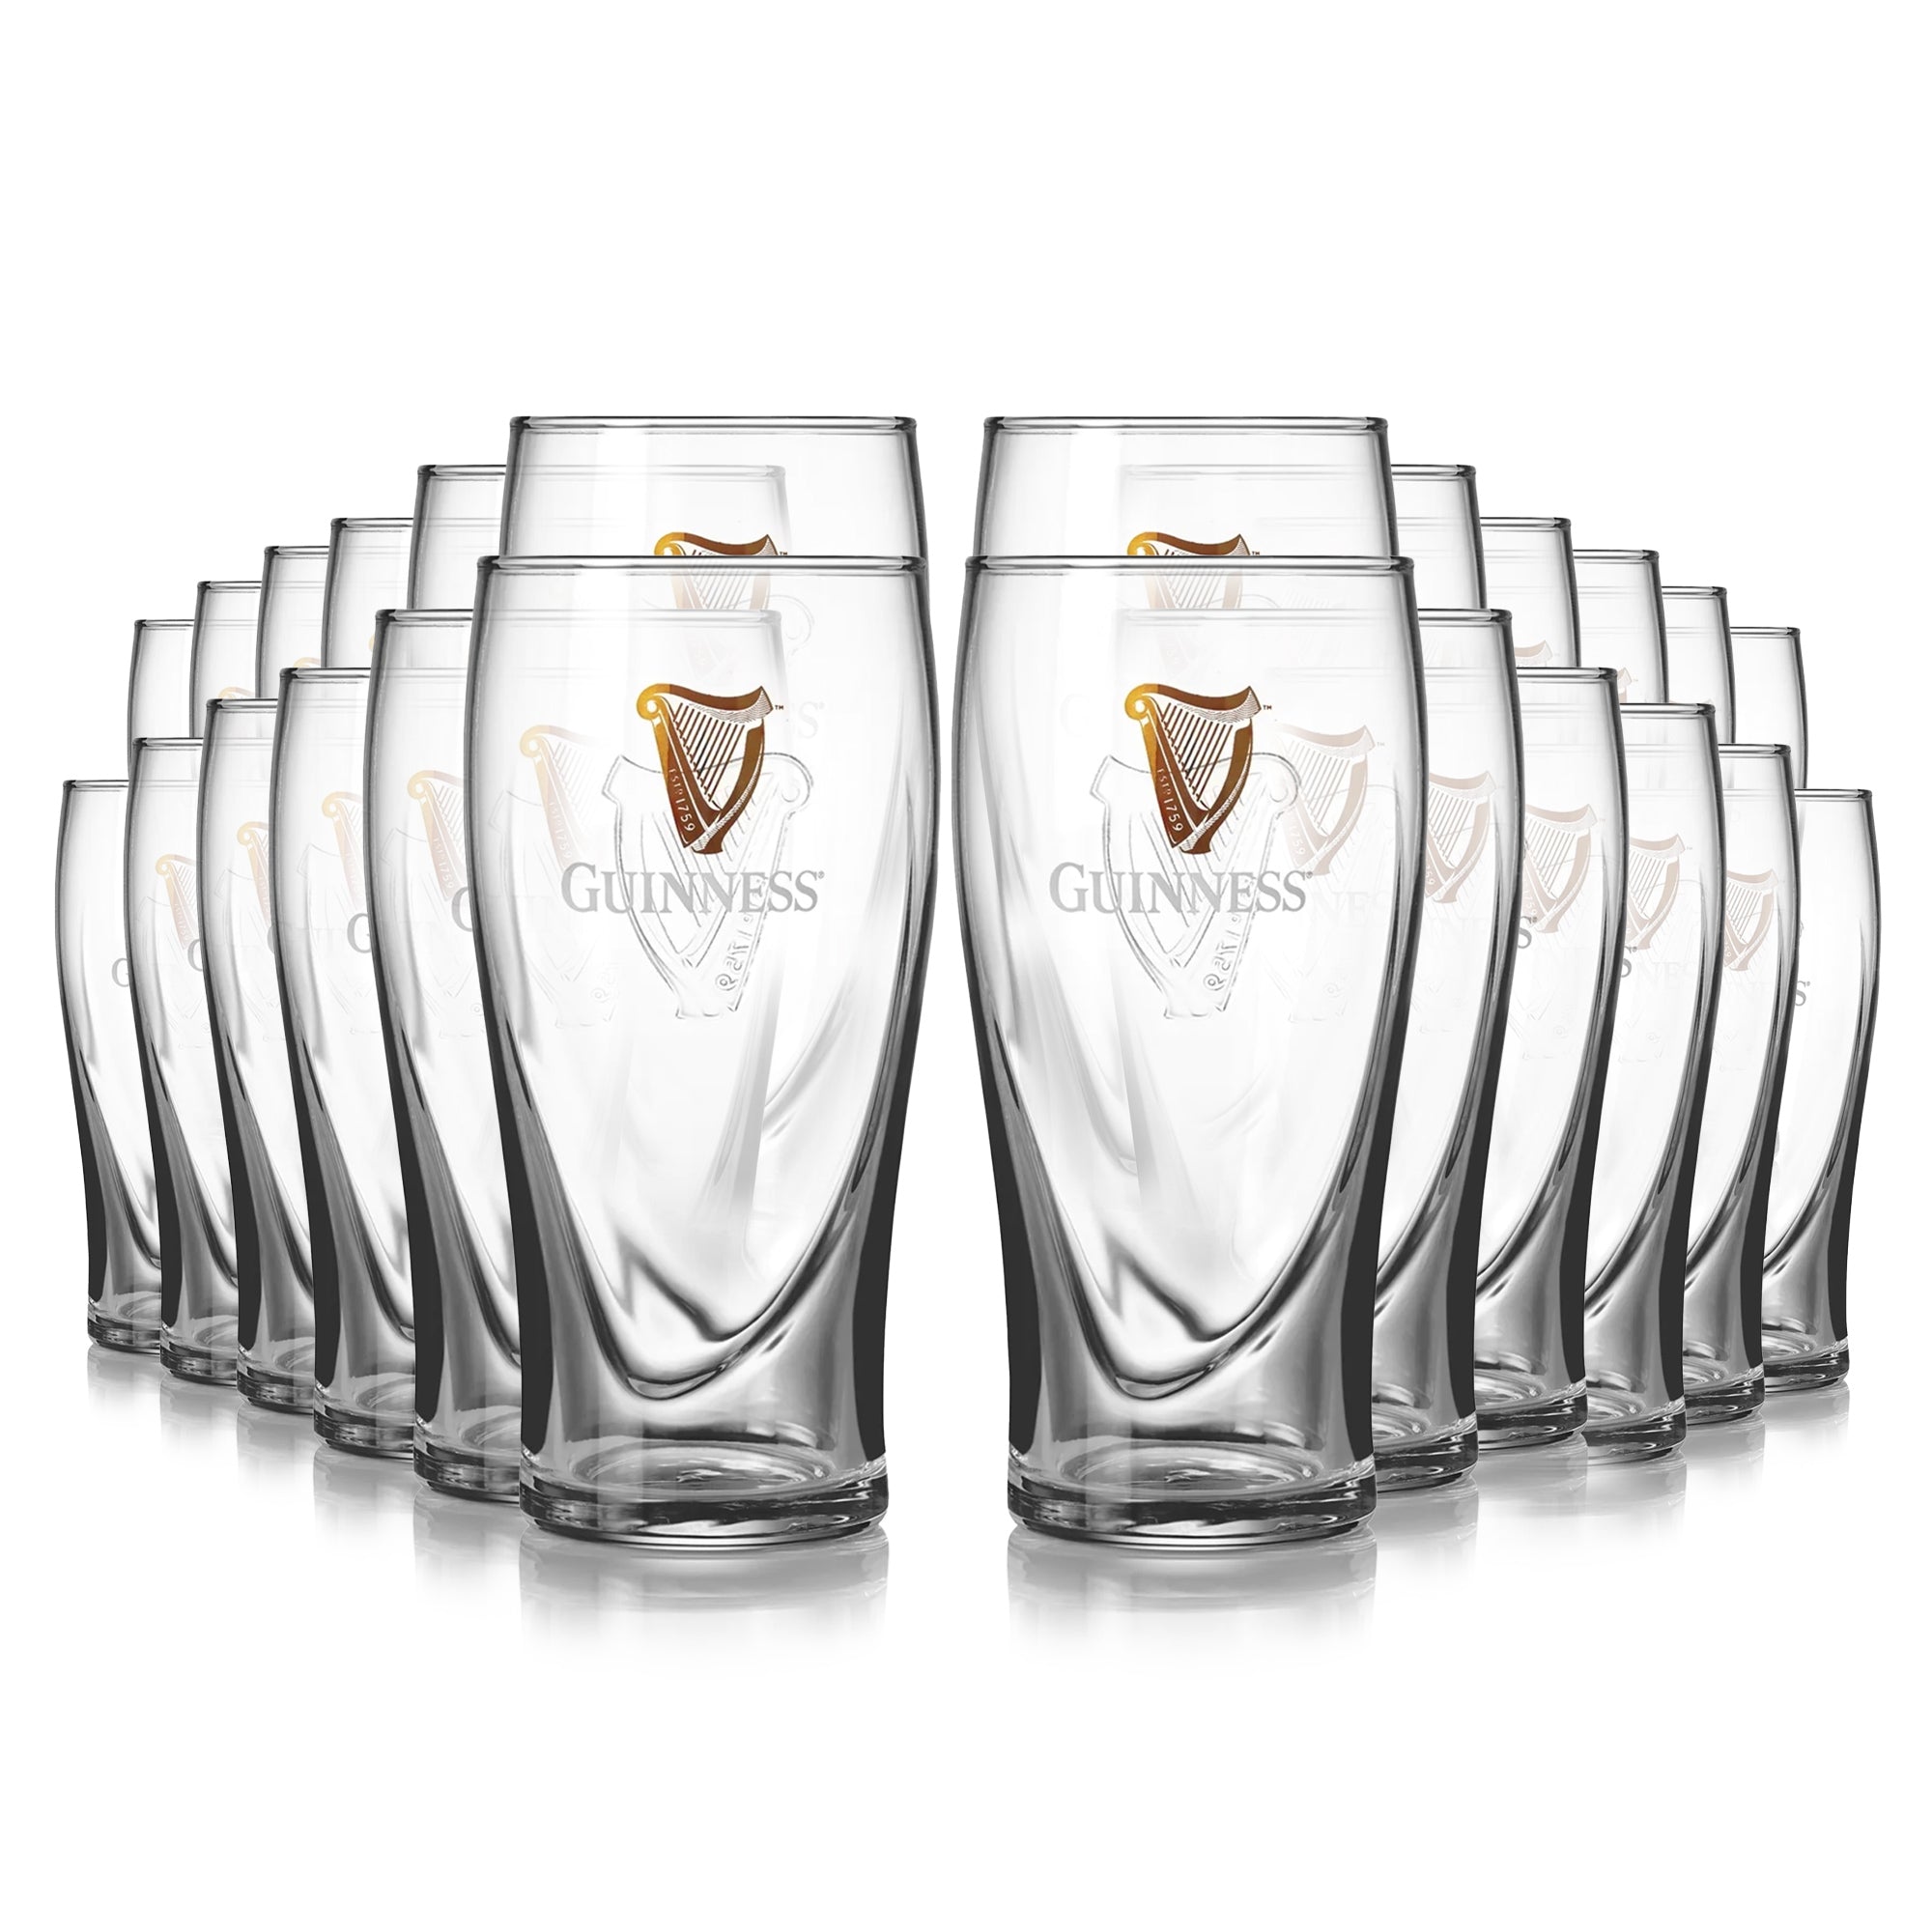 Guinness 827025 20 oz Harp Gravity Pint Glass - Pack of 2 